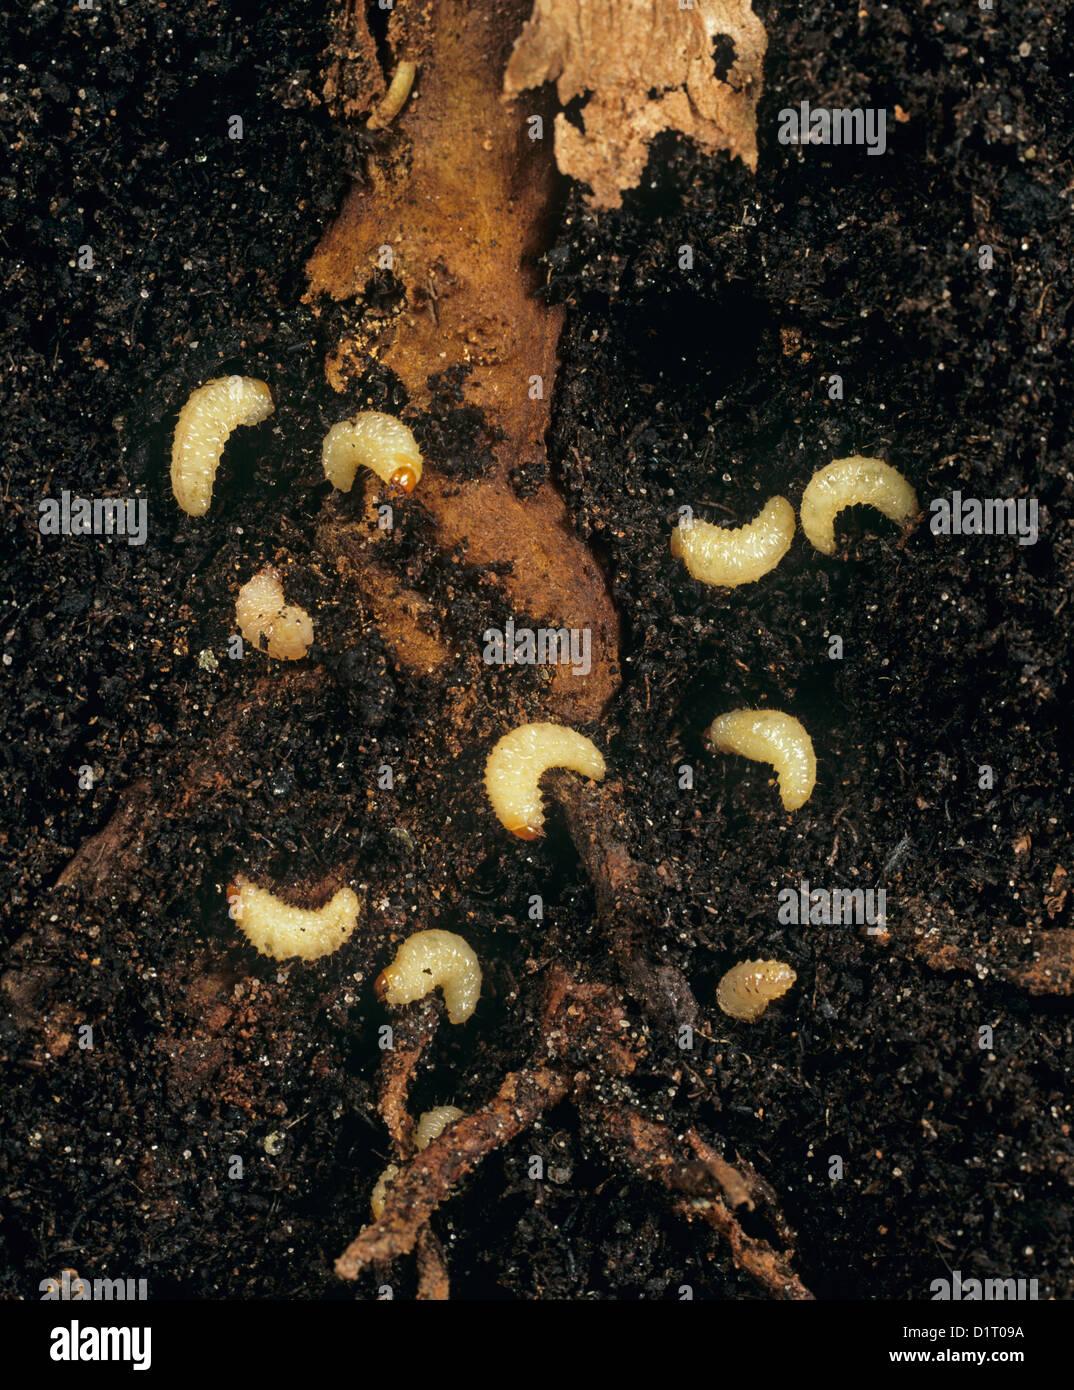 Les larves du charançon de la vigne en C, Otiorhynchus sulcatus, autour des racines d'un pot cultivé fuschia sur lequel ils se nourrissent Banque D'Images